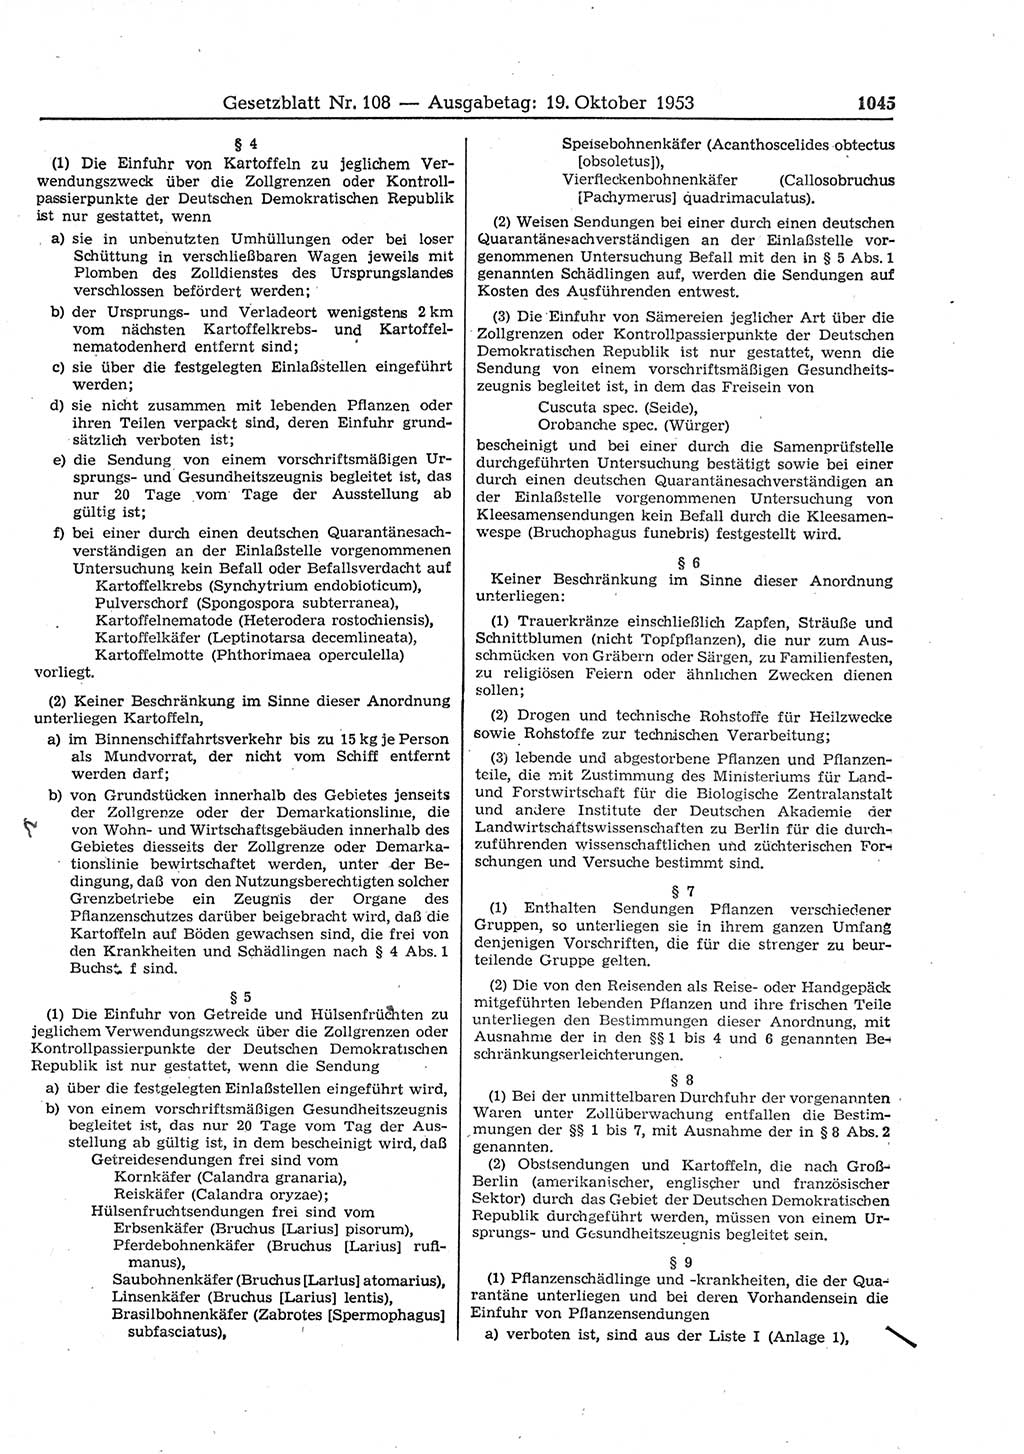 Gesetzblatt (GBl.) der Deutschen Demokratischen Republik (DDR) 1953, Seite 1045 (GBl. DDR 1953, S. 1045)